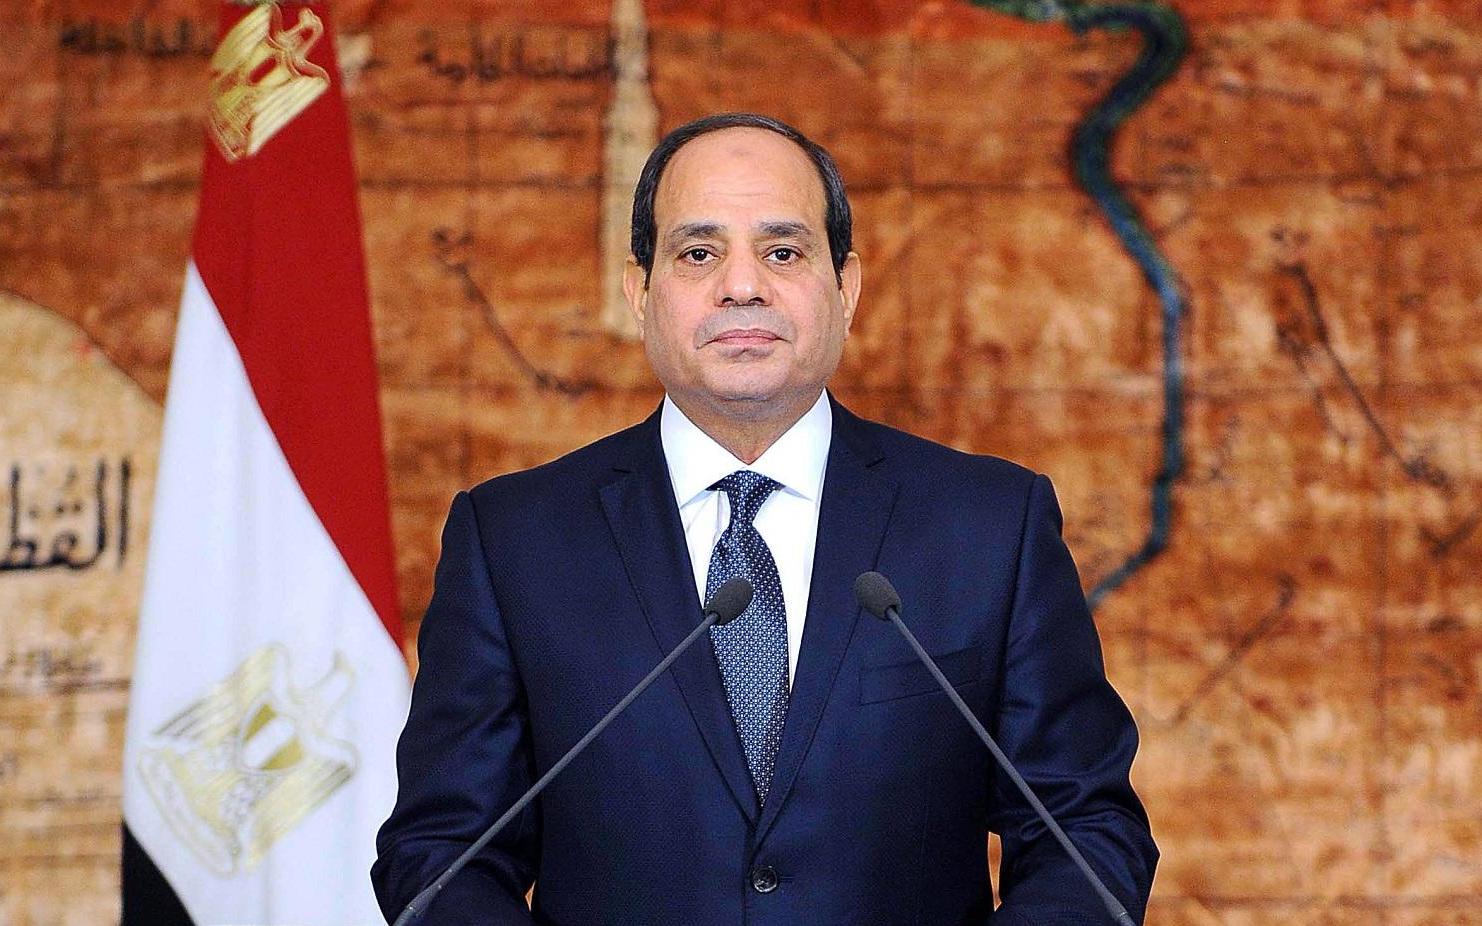 السيسي يؤكد على موقف مصر الواضح من رفض تهجير الفلسطينيين إلى سيناء أو أي مكان آخر